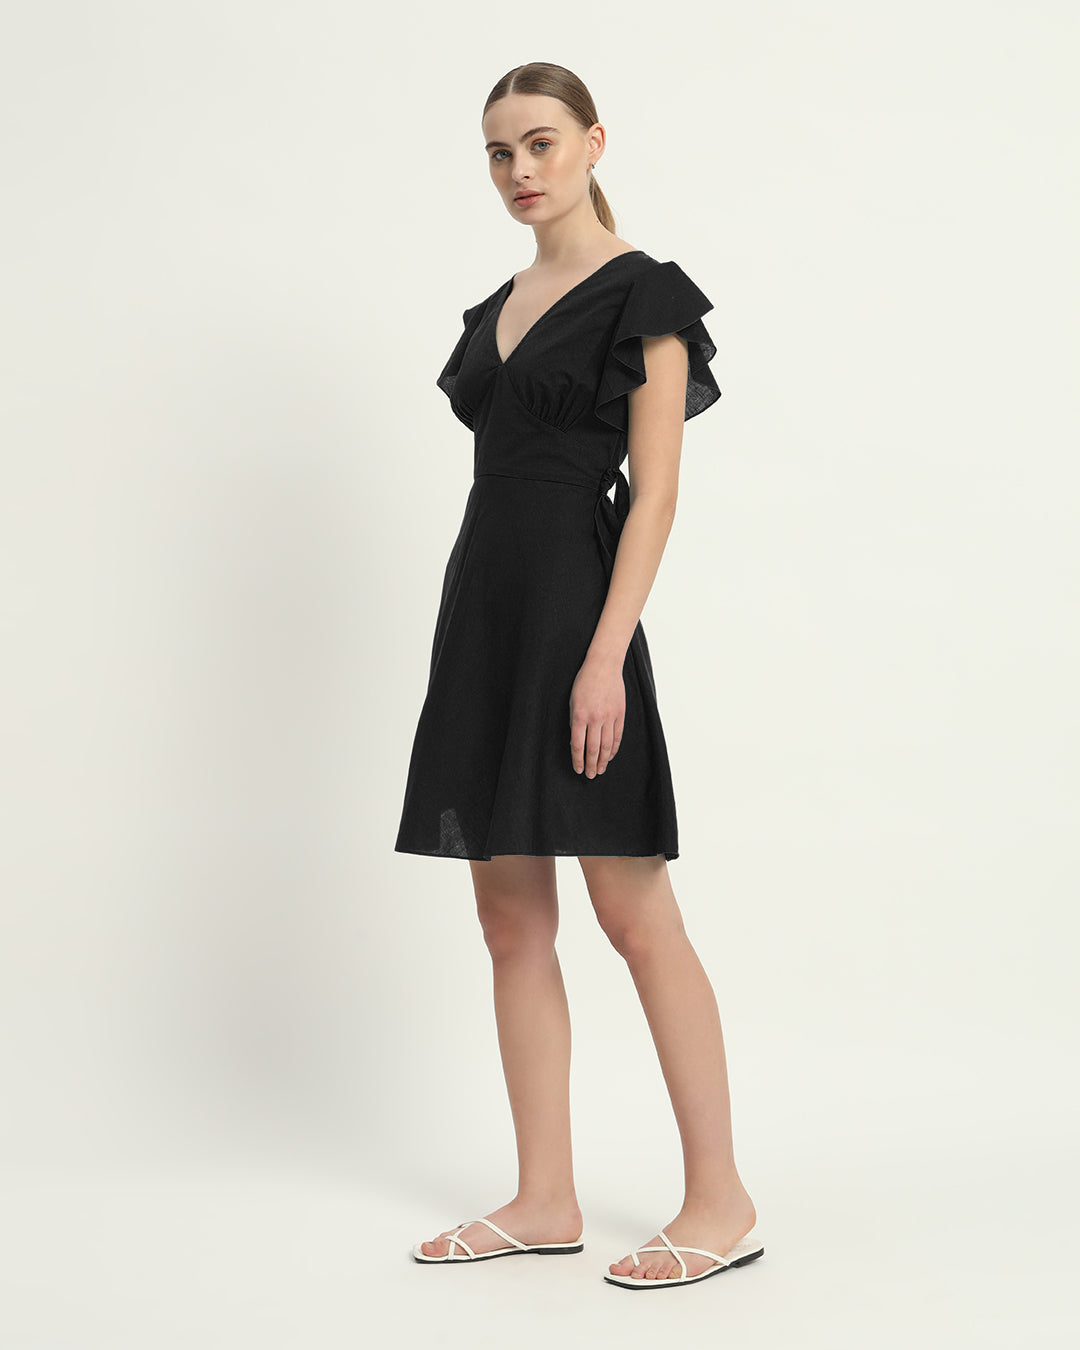 The Fairlie Noir Cotton Dress